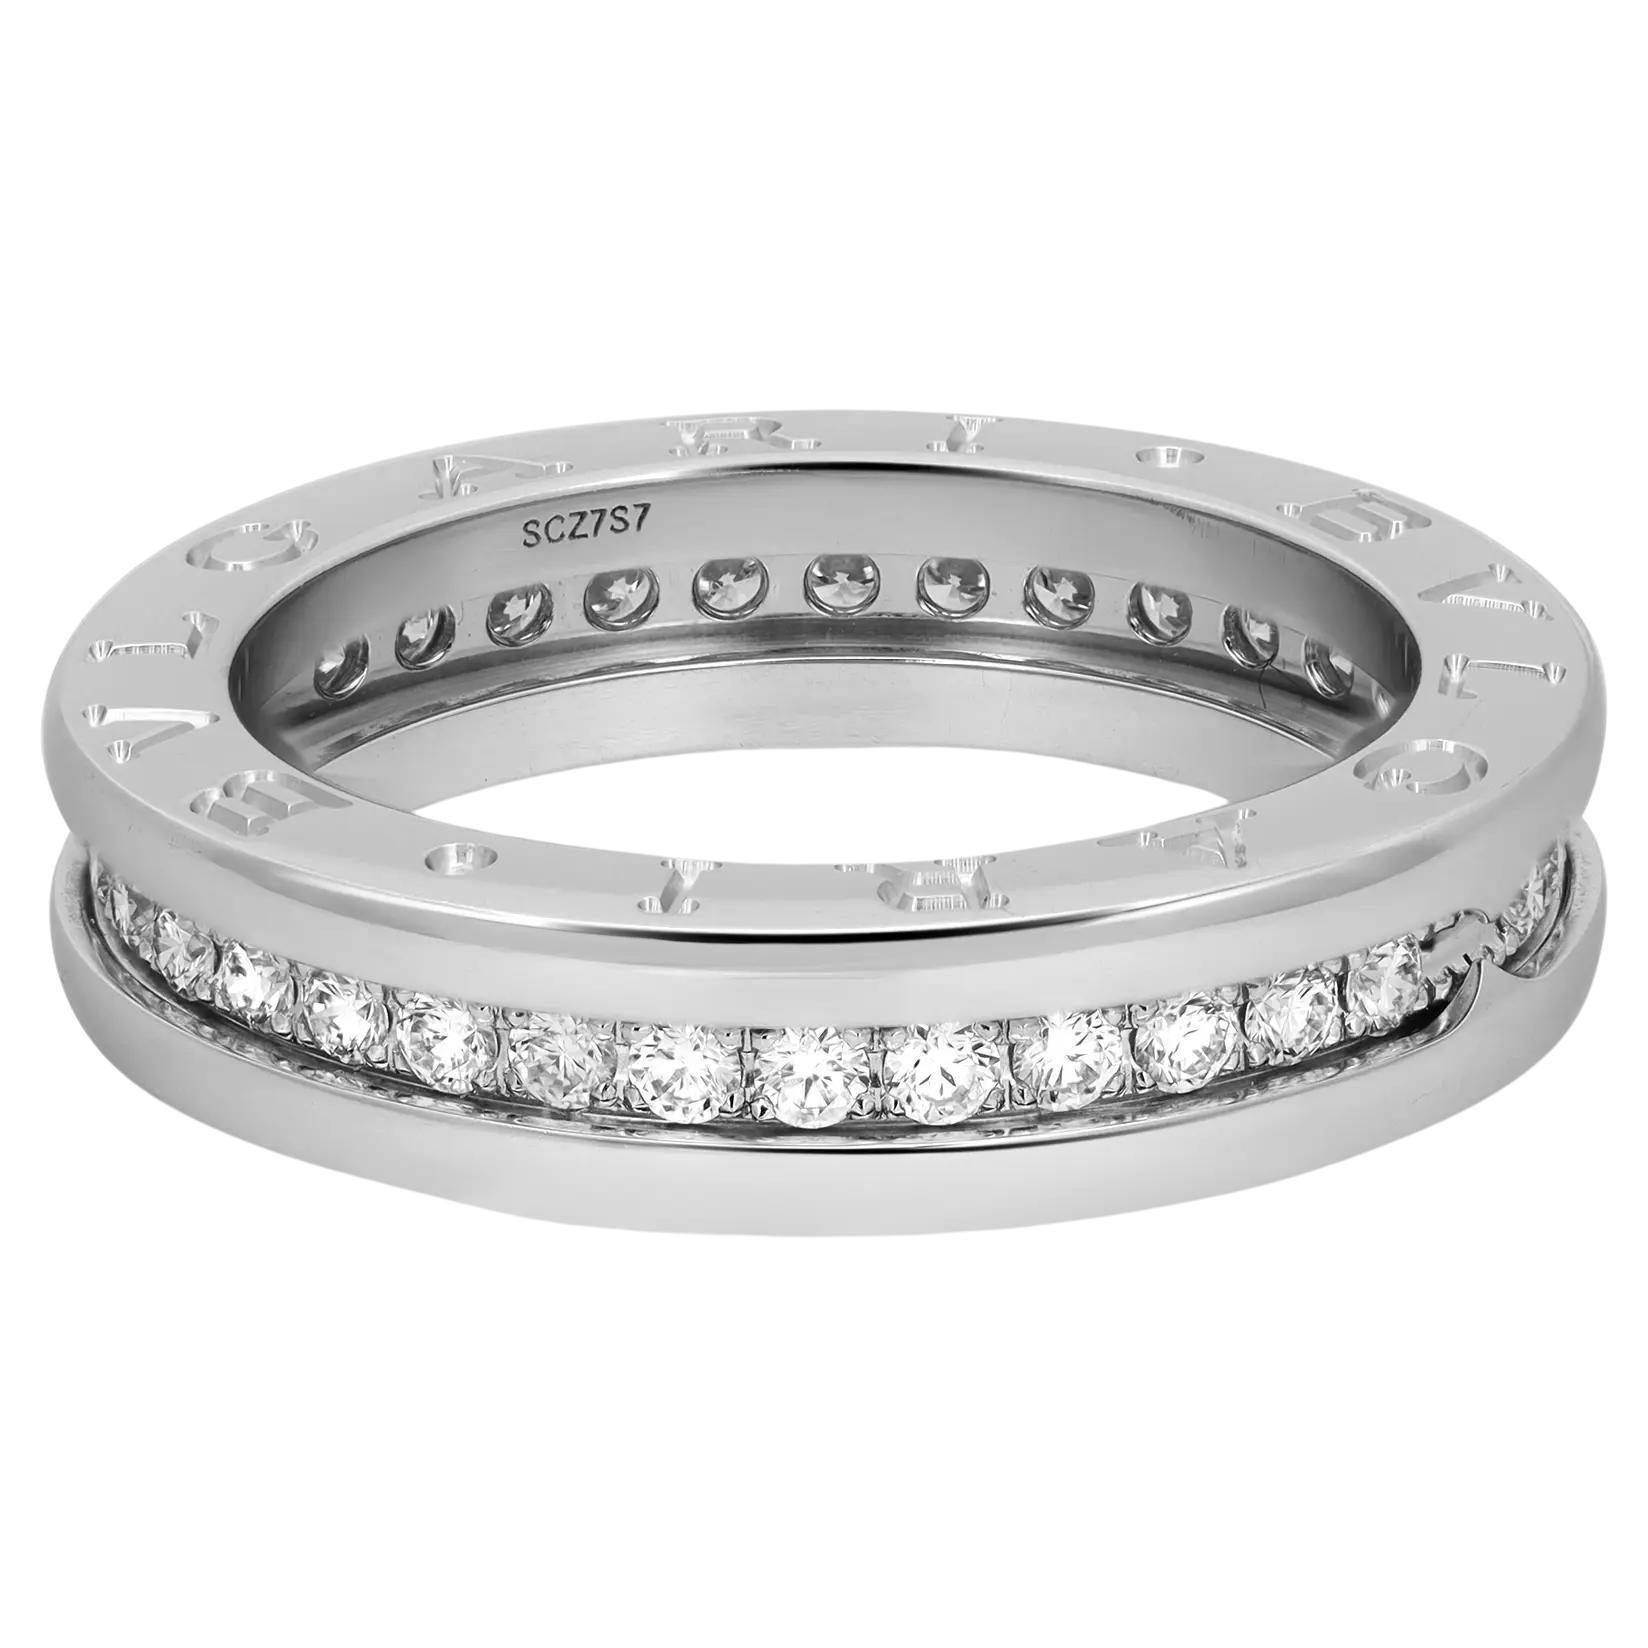 Bvlgari B.Zero1 Bague à un anneau en or blanc 18 carats avec diamants, taille 52 US 6